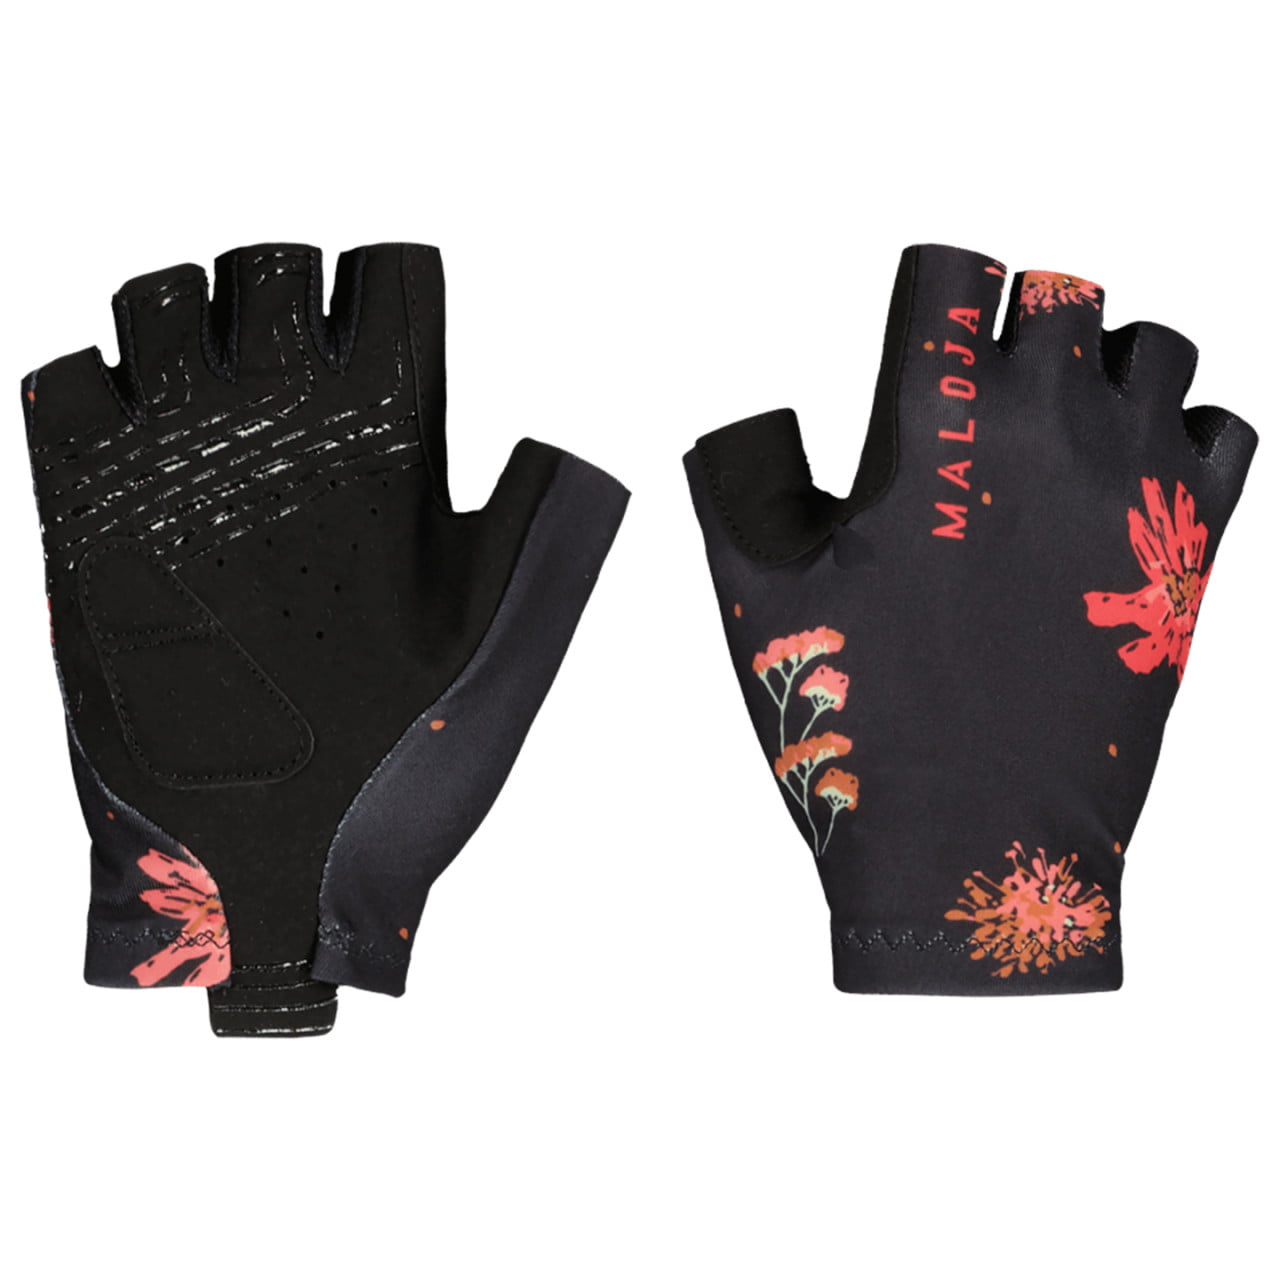 MuntanitzM. Gloves